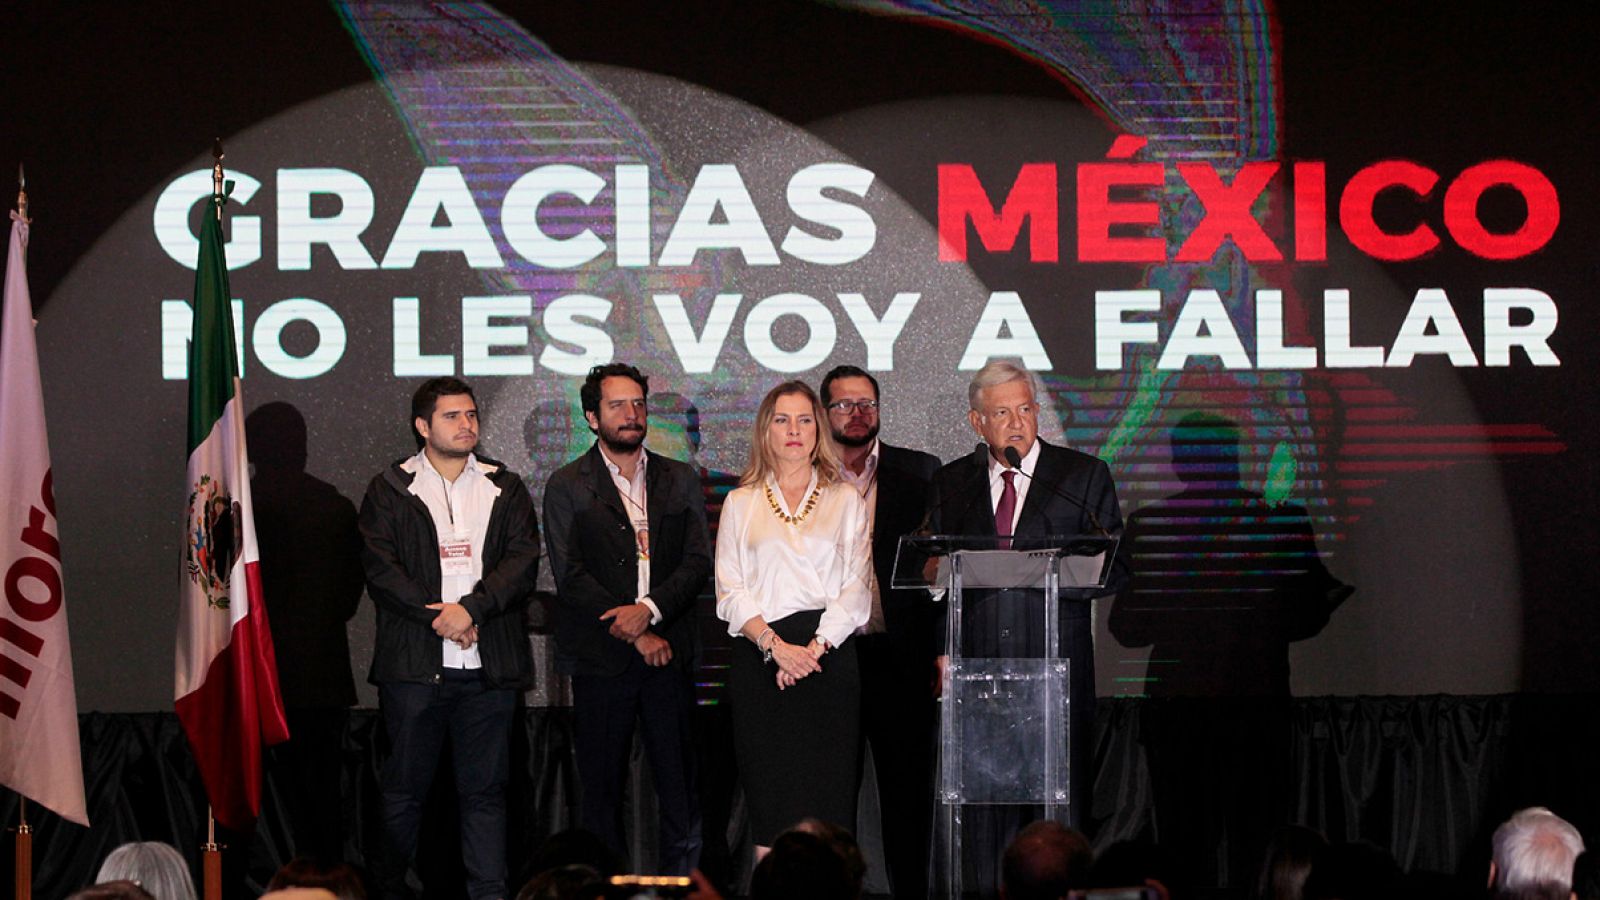 El líder izquierdista Andrés Manuel López Obrador, candidato del Movimiento de Regeneración Nacional (Morena), ofrece declaraciones acompañado de su esposa Beatriz Gutiérrez Müller